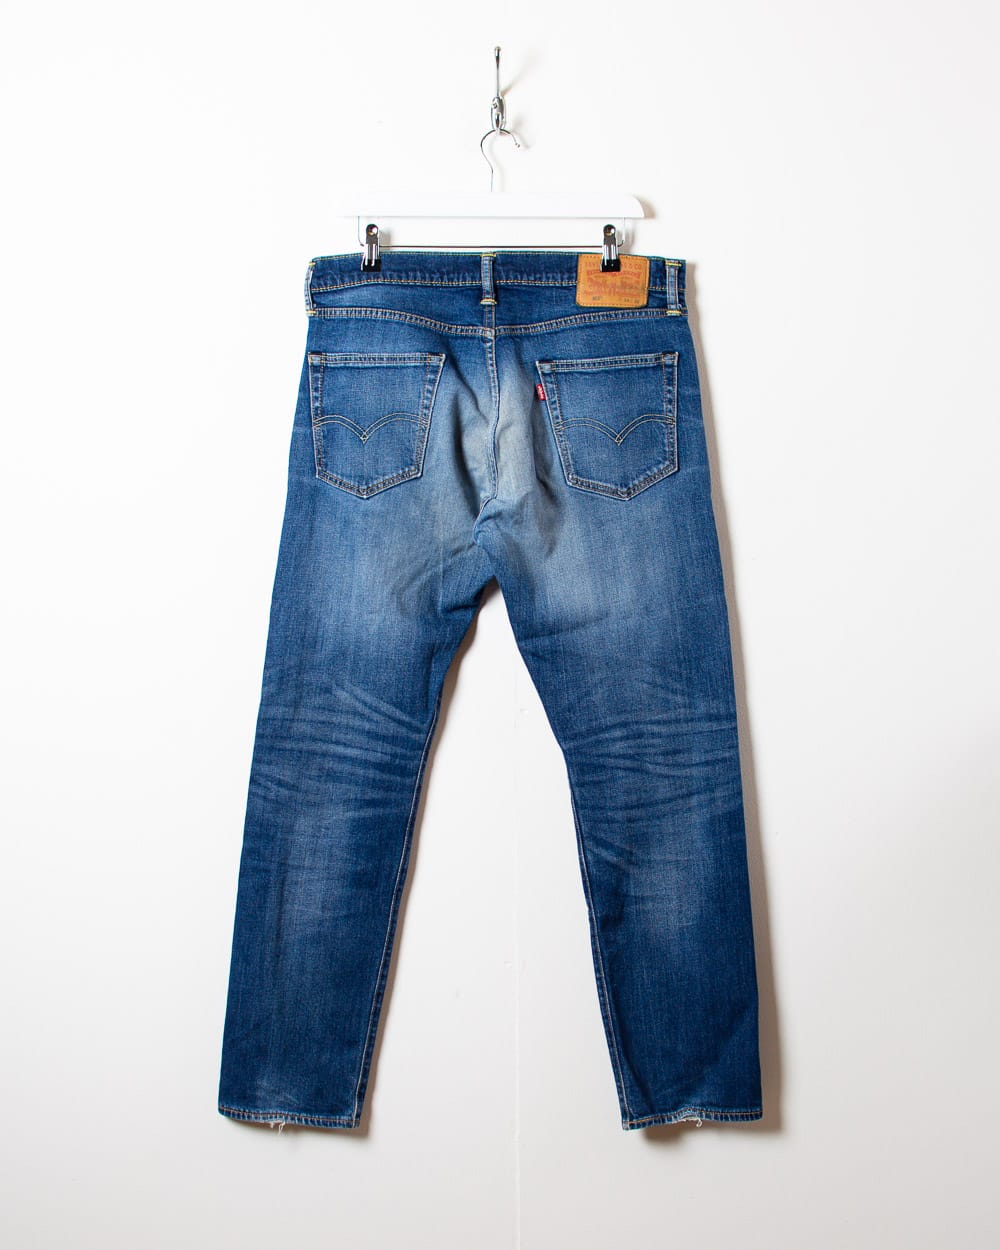 Blue Levi's 502 Jeans - W34 L30